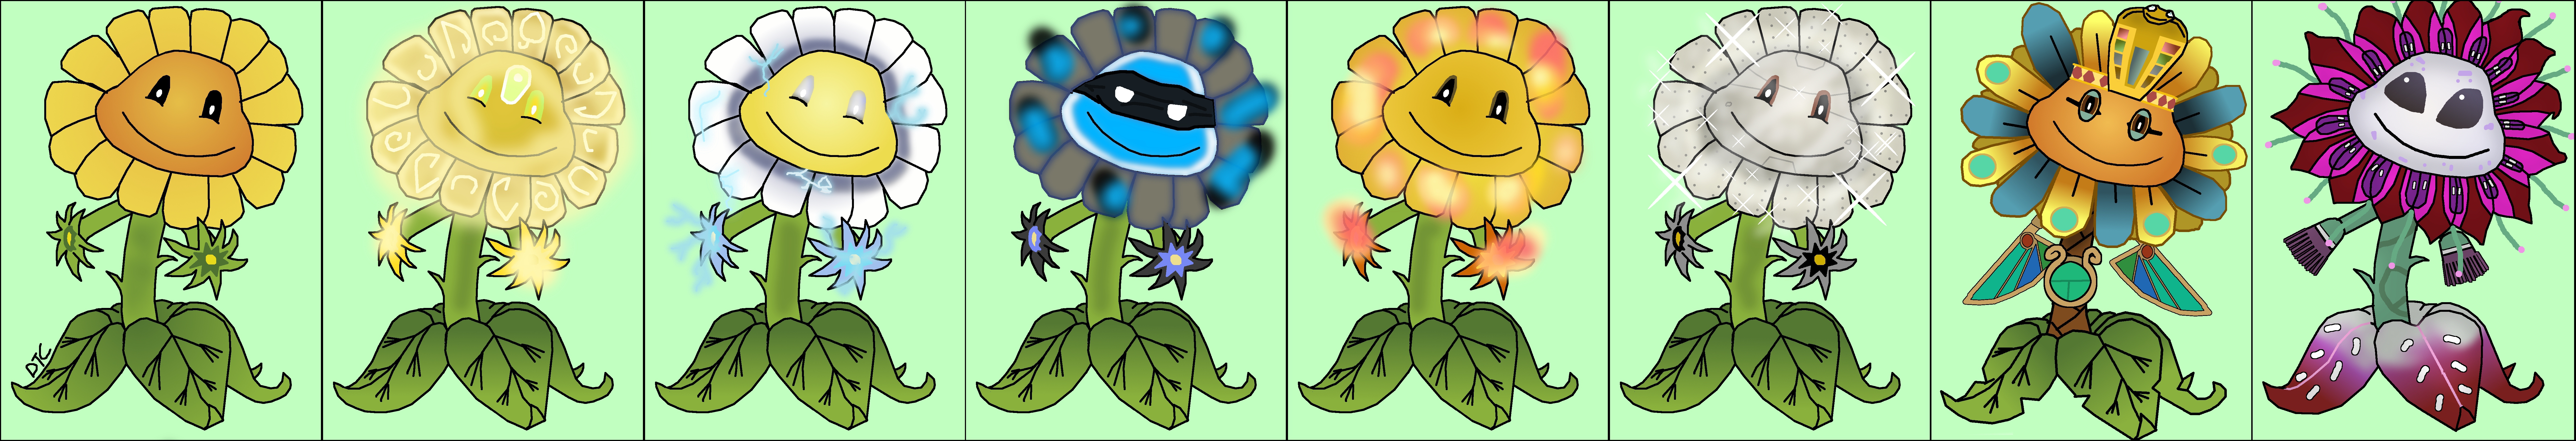 plants vs zombies garden warfare 2 all sunflowers - hd image flower